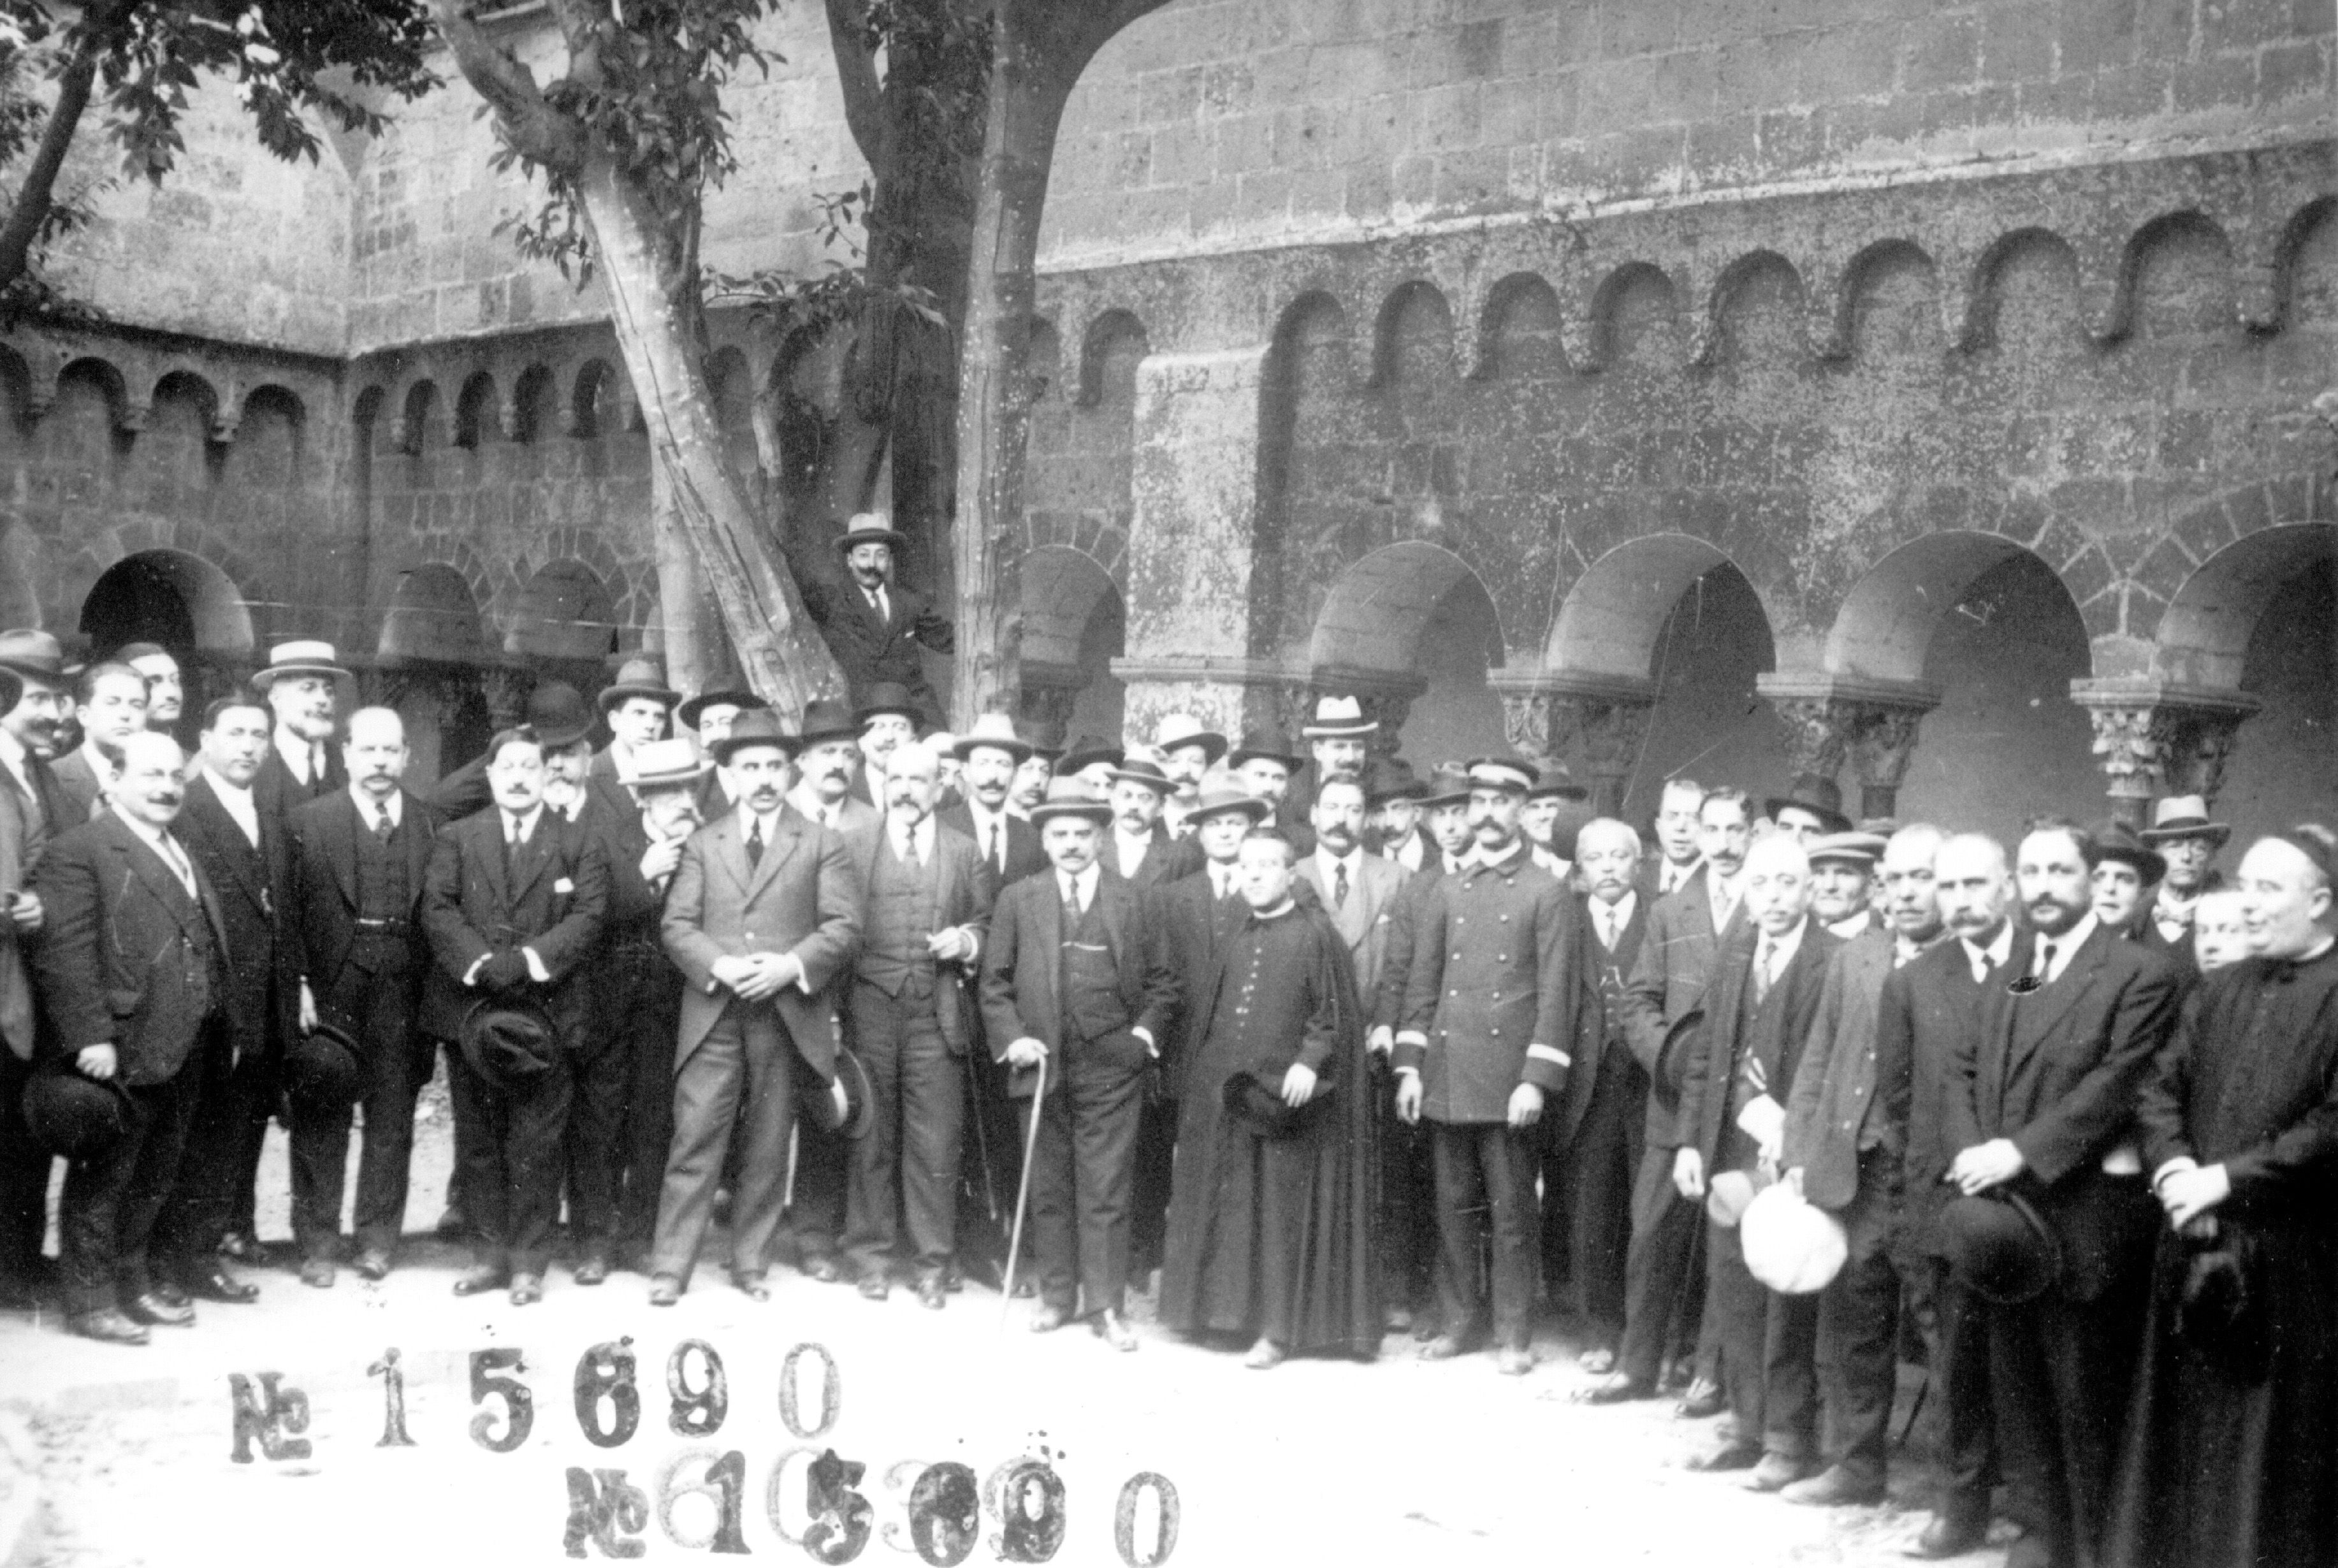 Les persones implicades en el ferrocarril, fotografiades al Claustre del Monestir, on es va celebrar on es va celebrar el banquet oficial de la inauguració FOTO: Arxiu FGC